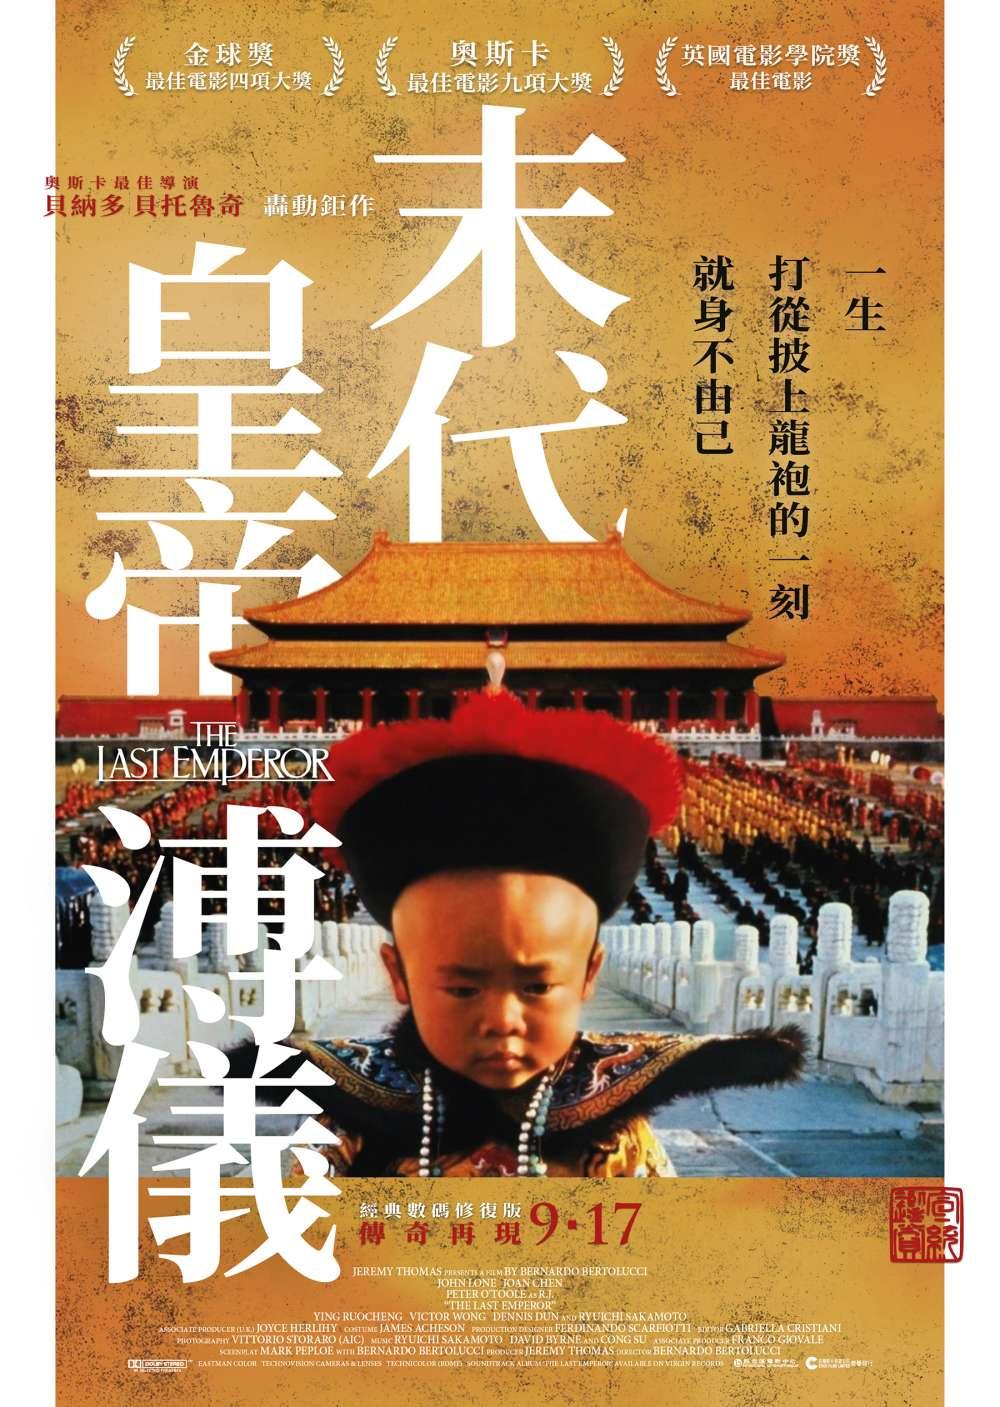 香港版海報 #2（2020年版本）